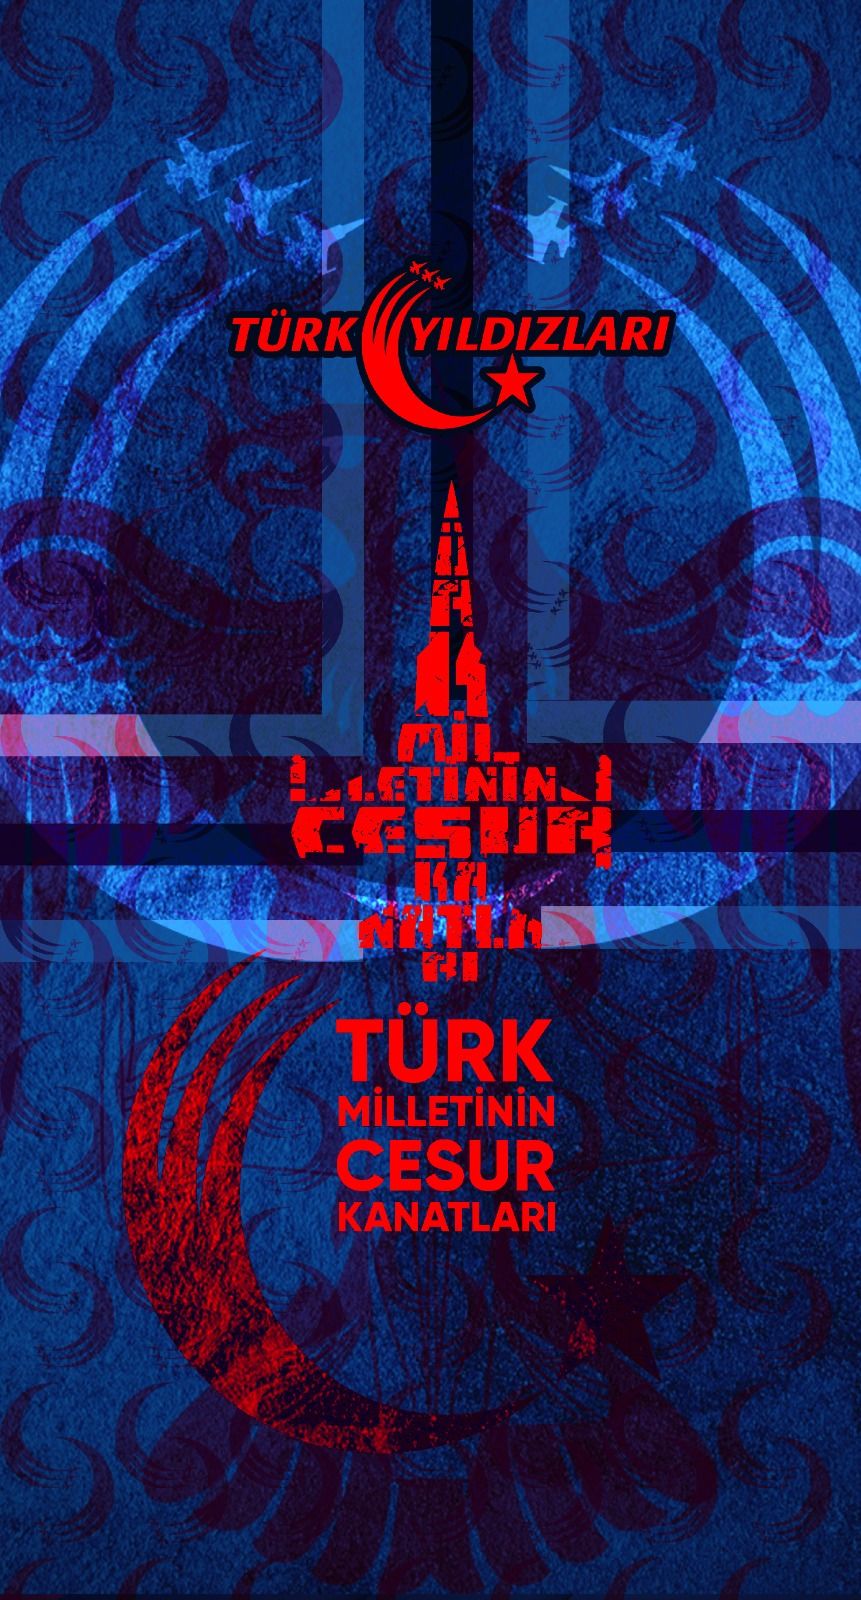 Türk Yıldızları Mavi-Kırmızı Cesur Kanatlar Bandana